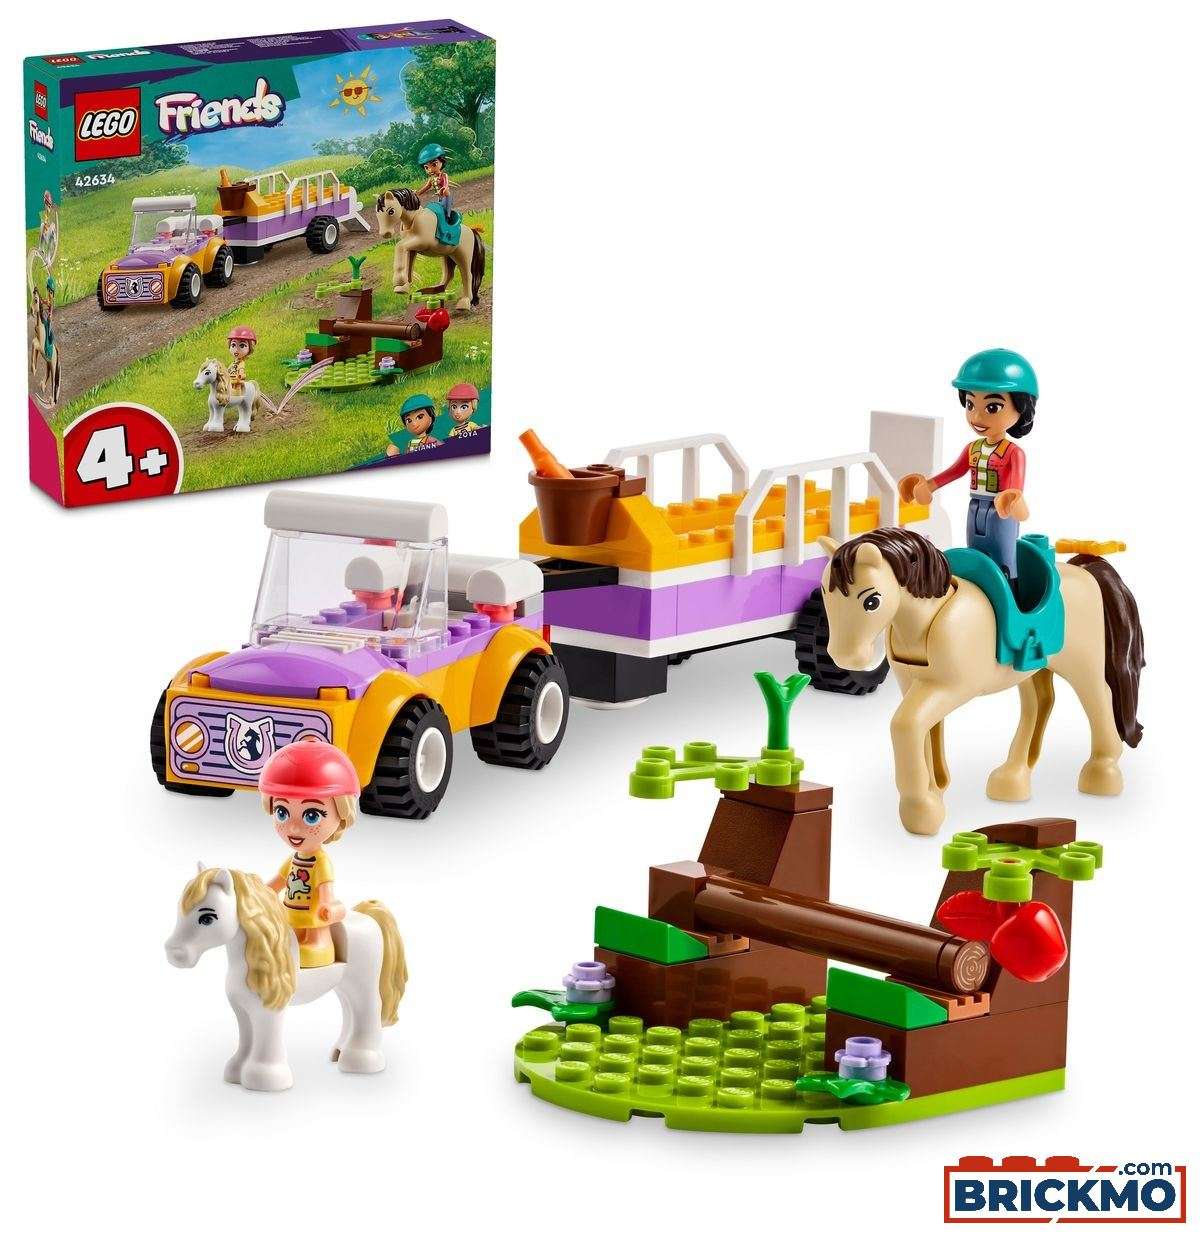 LEGO Friends 42634 Atrelado com Cavalo e Pónei 42634